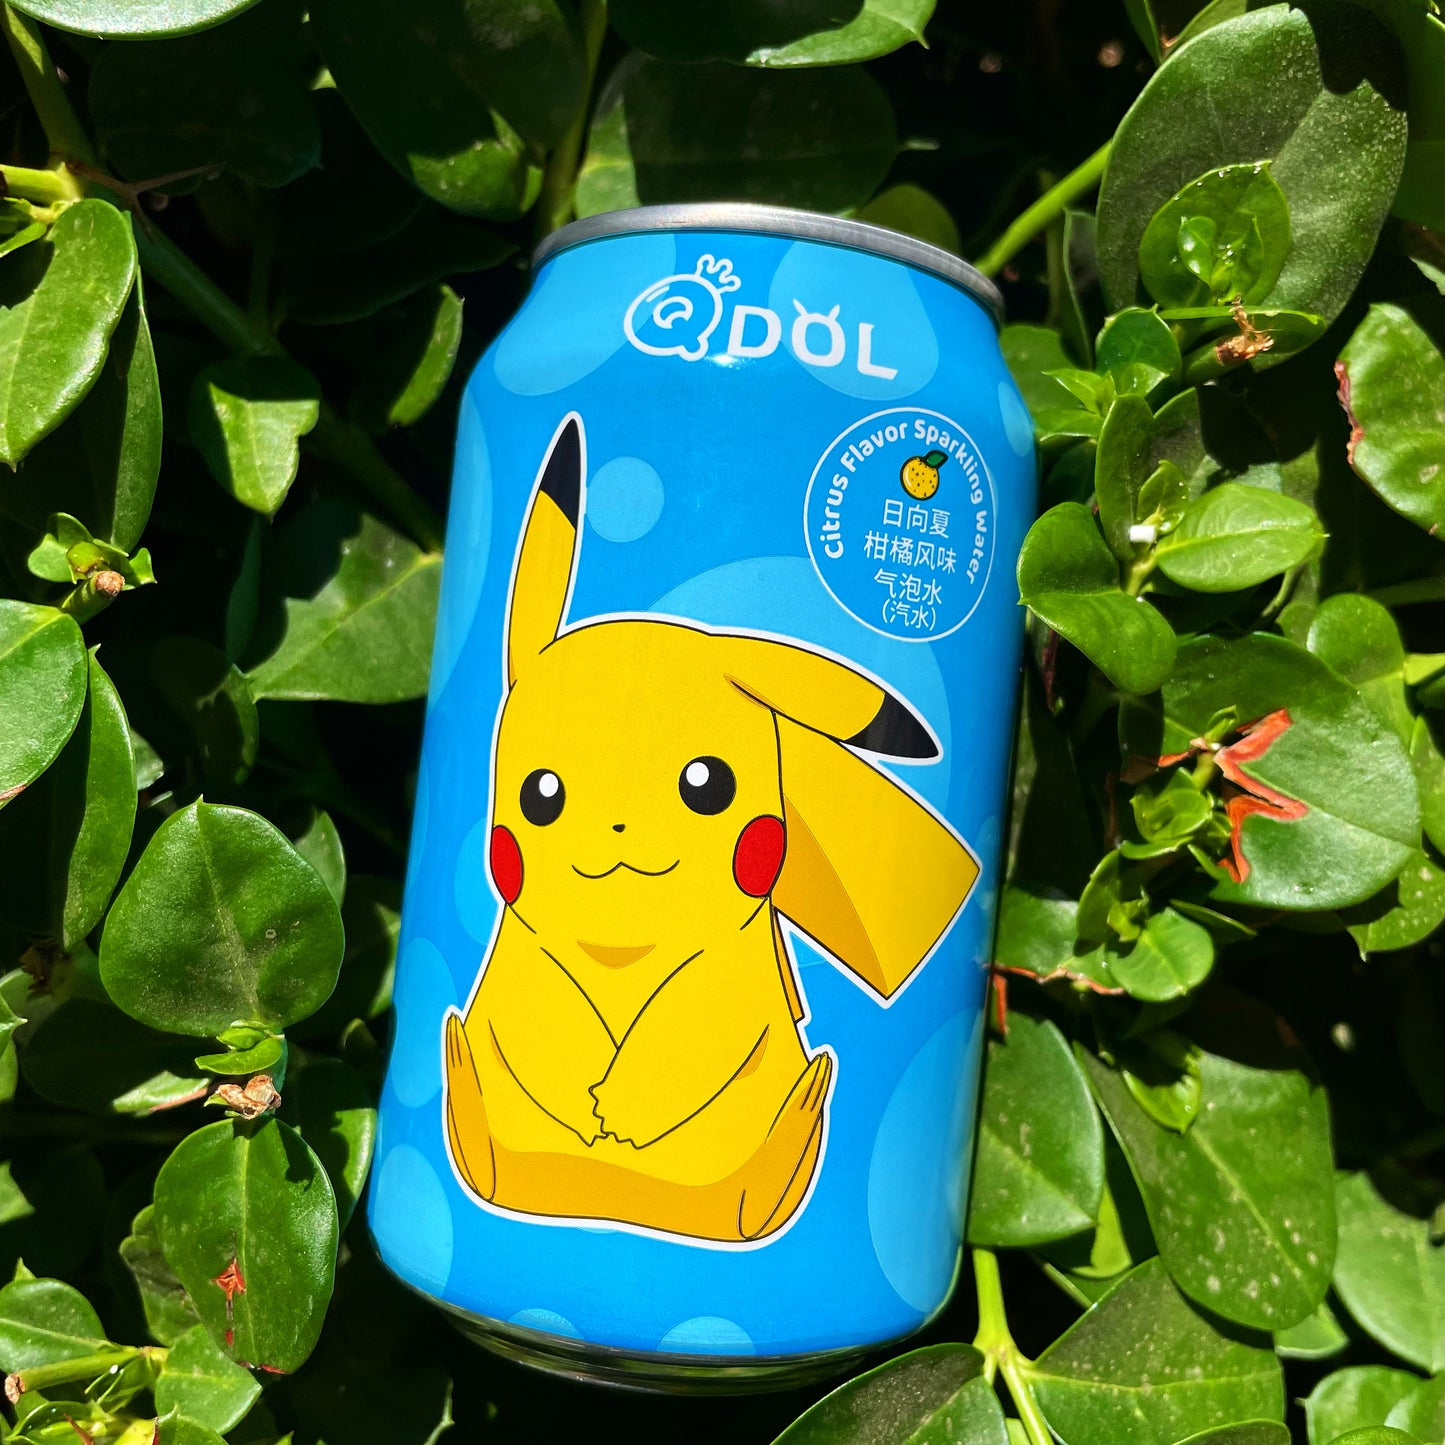 QDOL Pikachu Citrus Sparkling Water (Taiwan)